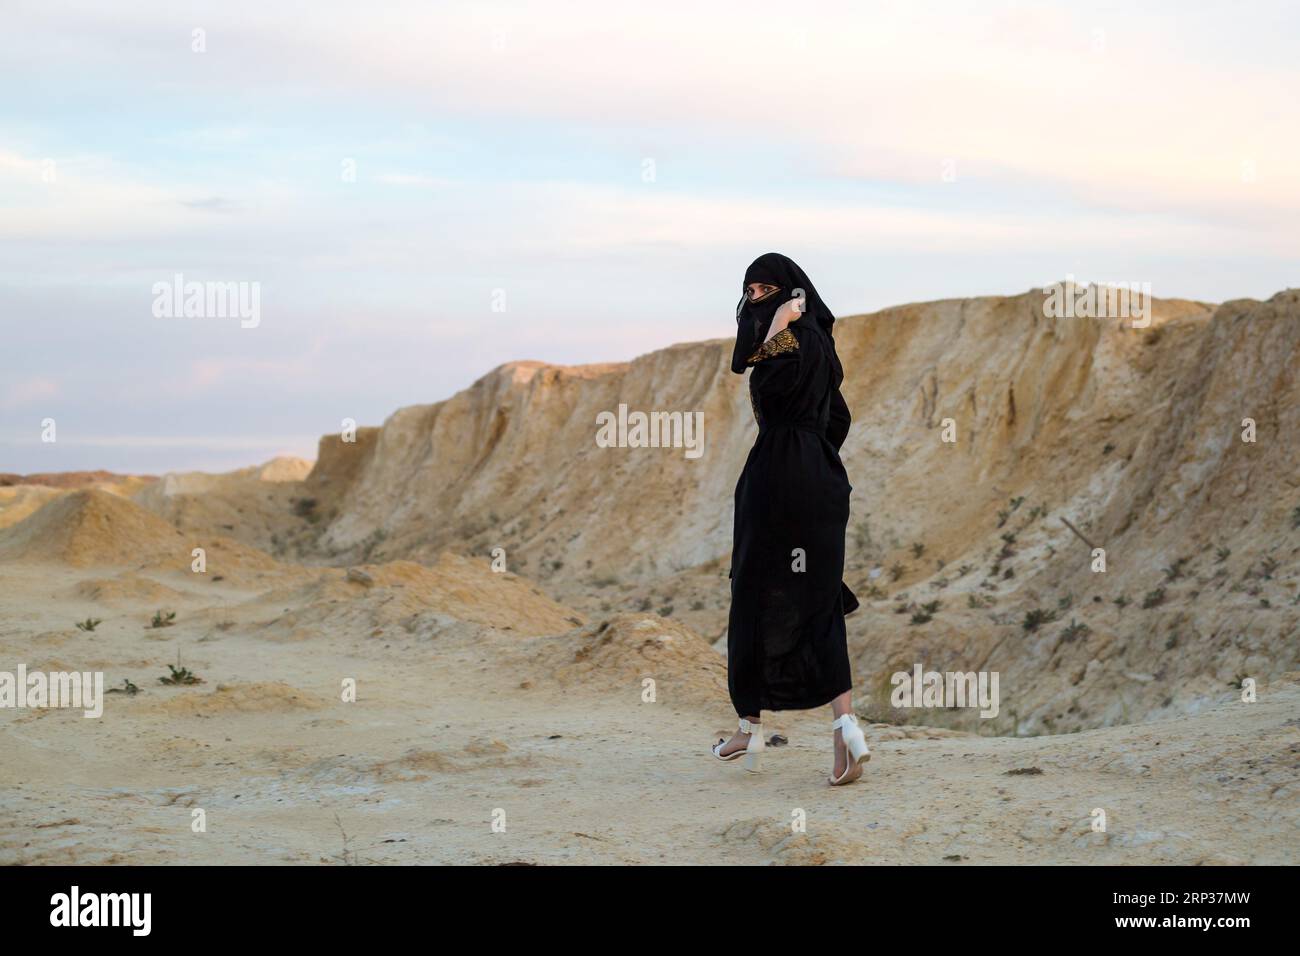 La ropa nacional negra de la mujer del Islam corre a través del desierto del peligro. Foto de stock